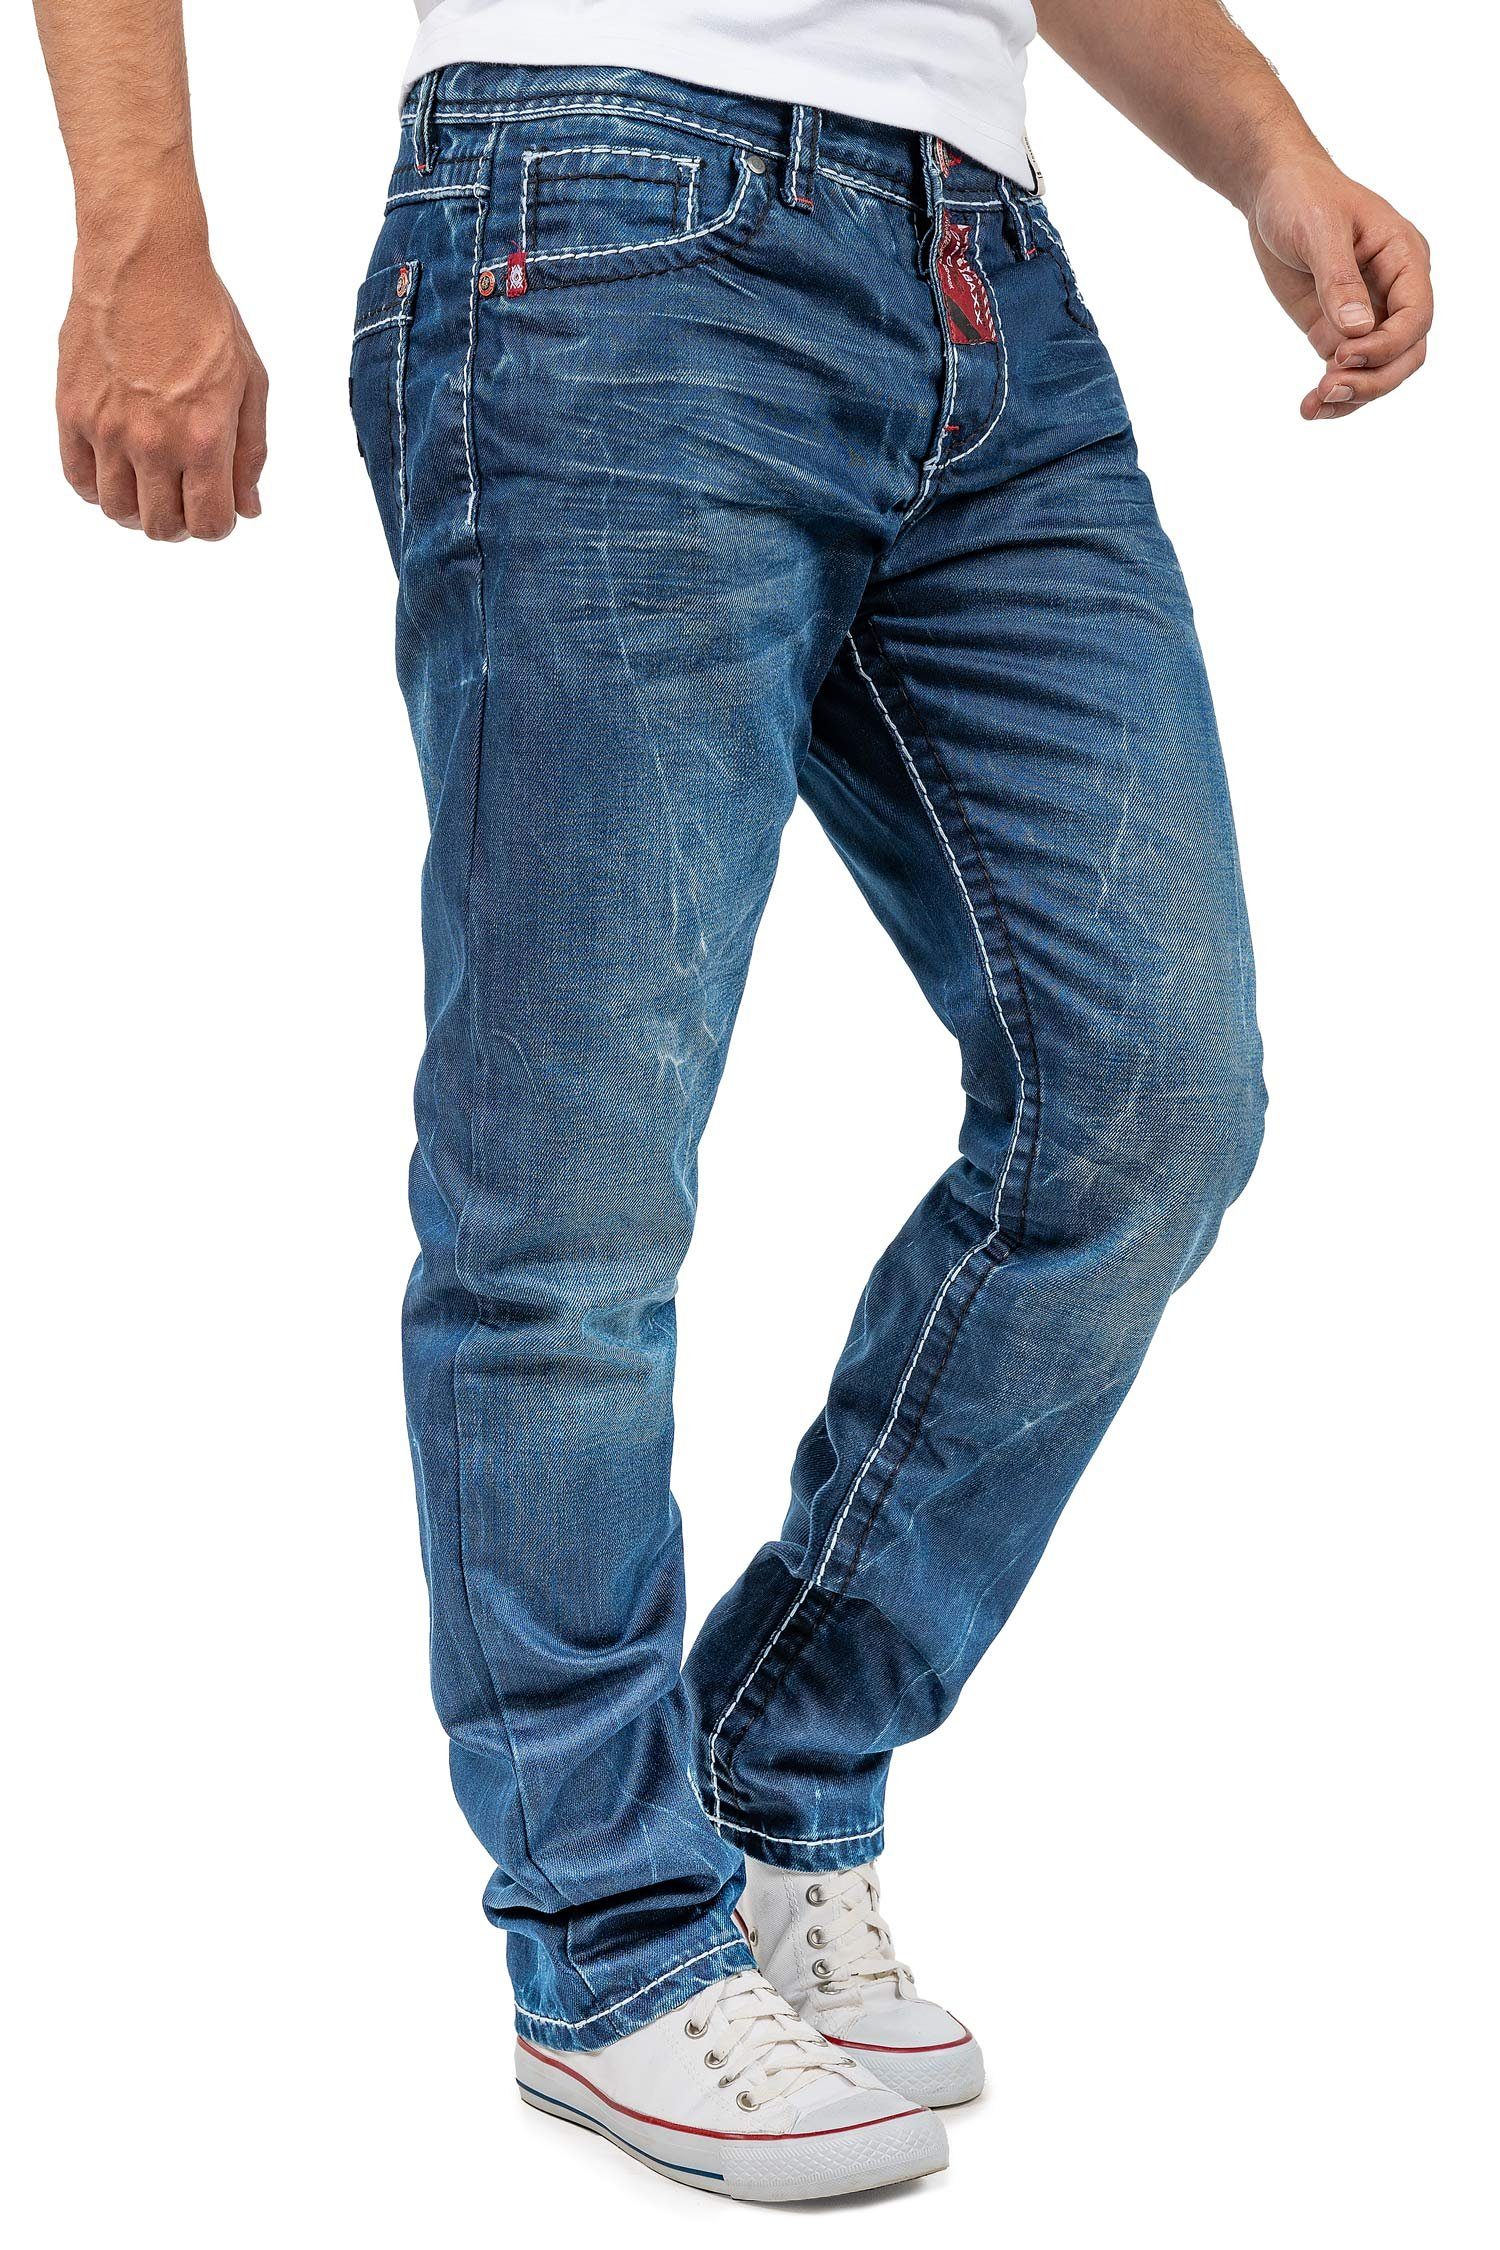 Baxx & BA-CD709 Hose Verzierungen Stylischen mit Straight-Jeans Casual Cipo